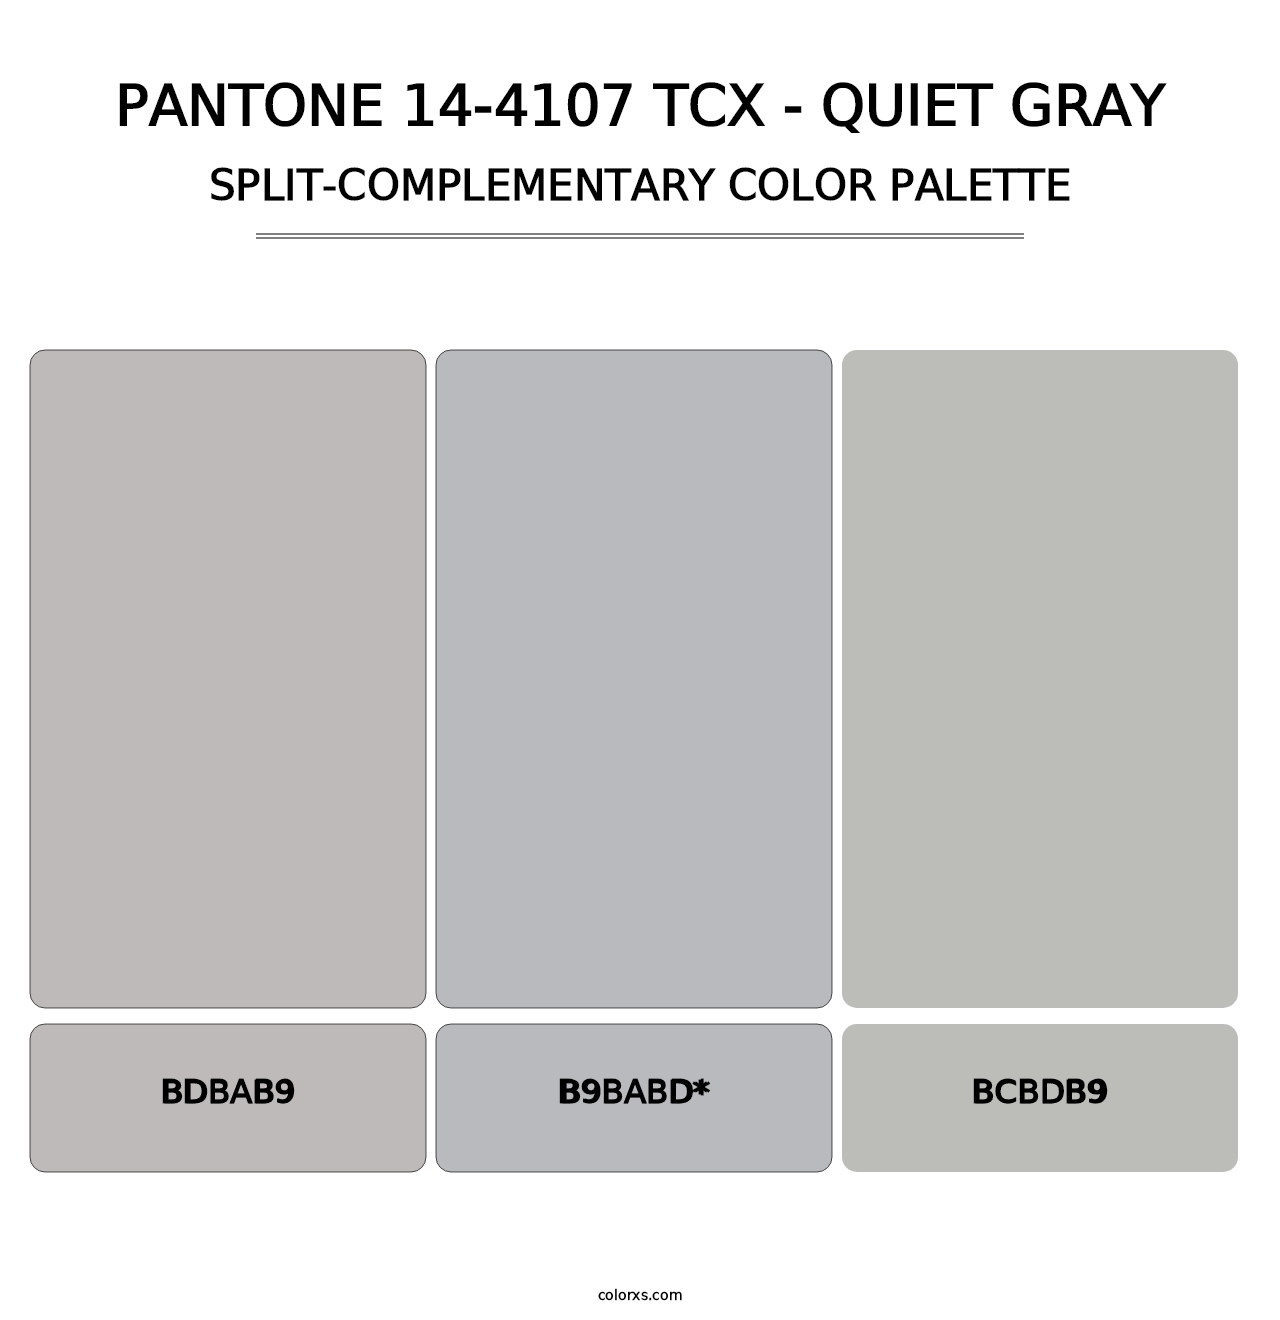 PANTONE 14-4107 TCX - Quiet Gray - Split-Complementary Color Palette